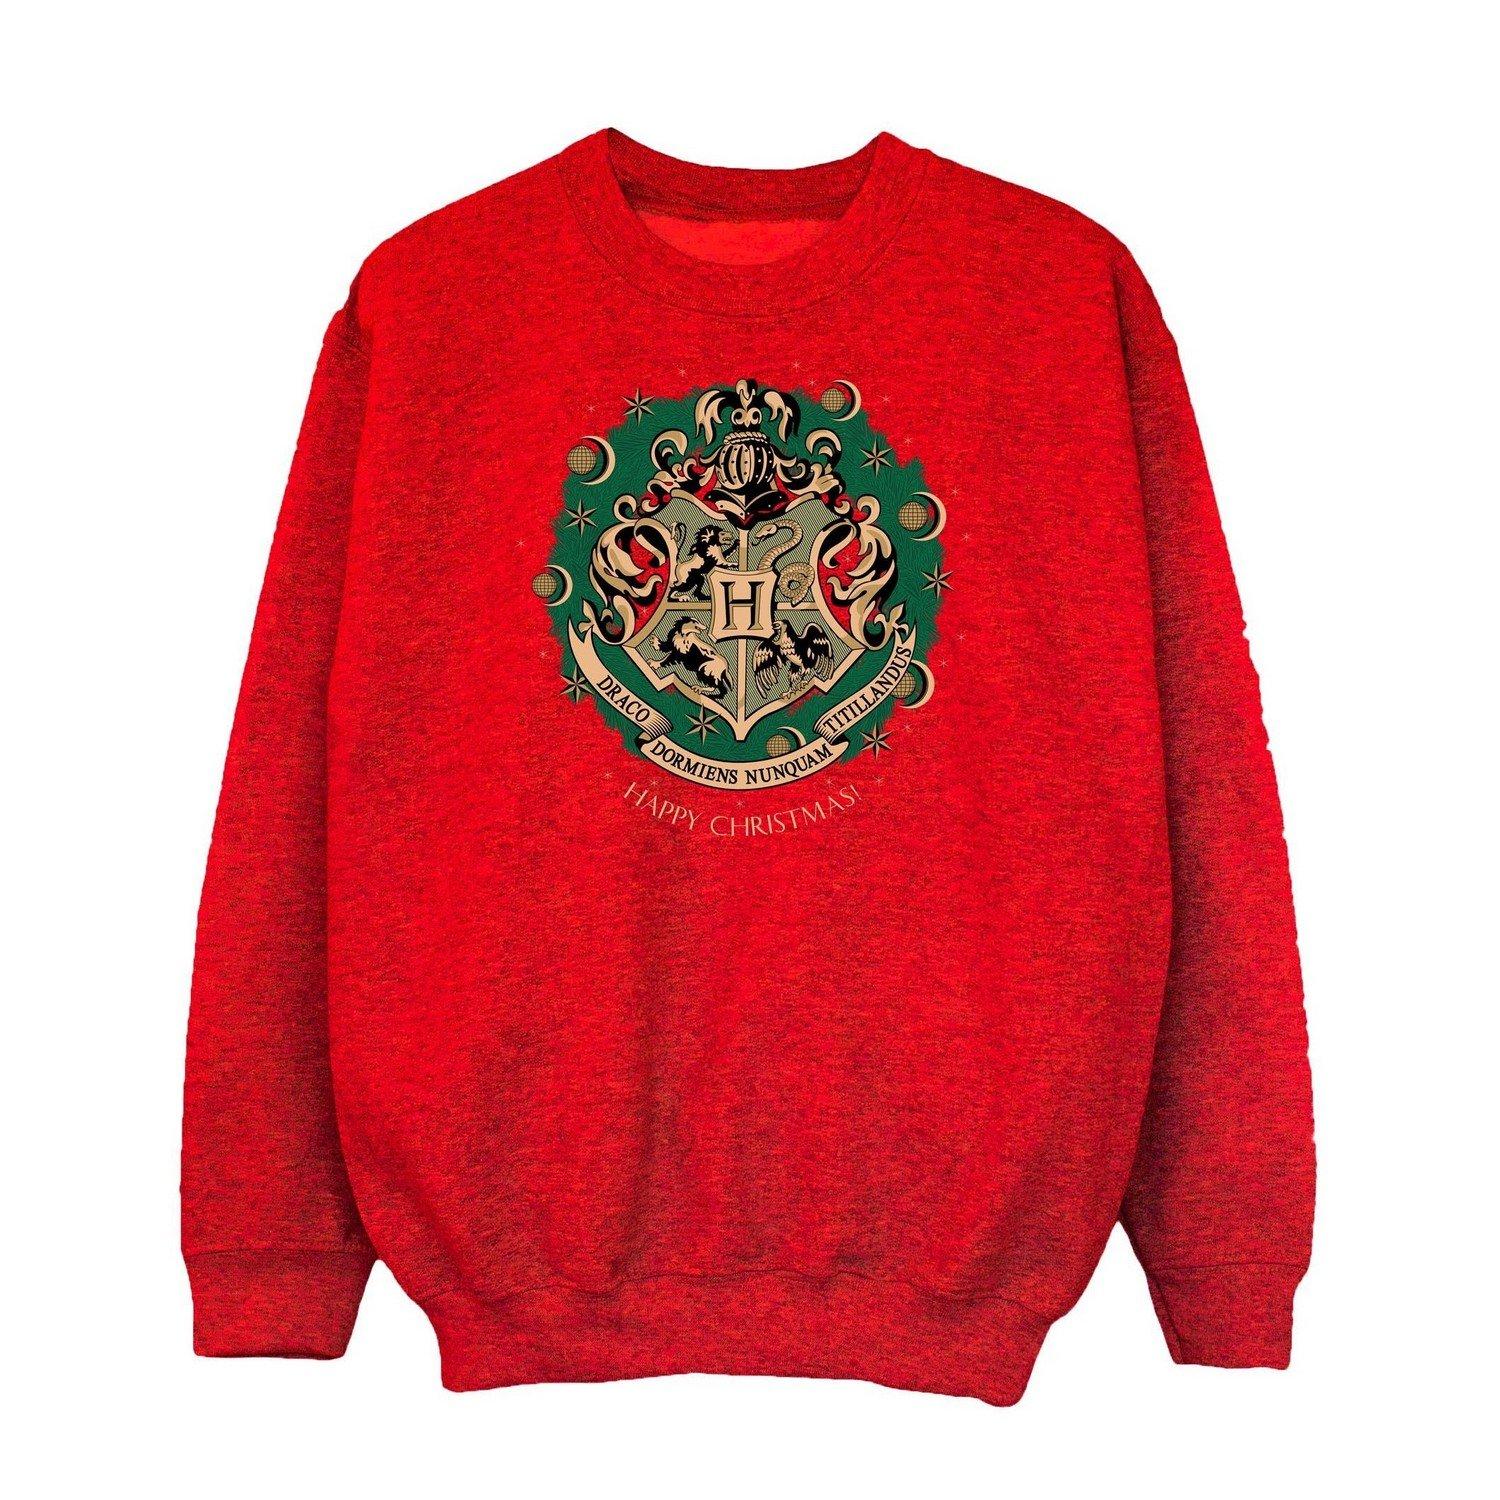 Sweatshirt Weihnachtliches Design Unisex Rot Bunt 116 von Harry Potter